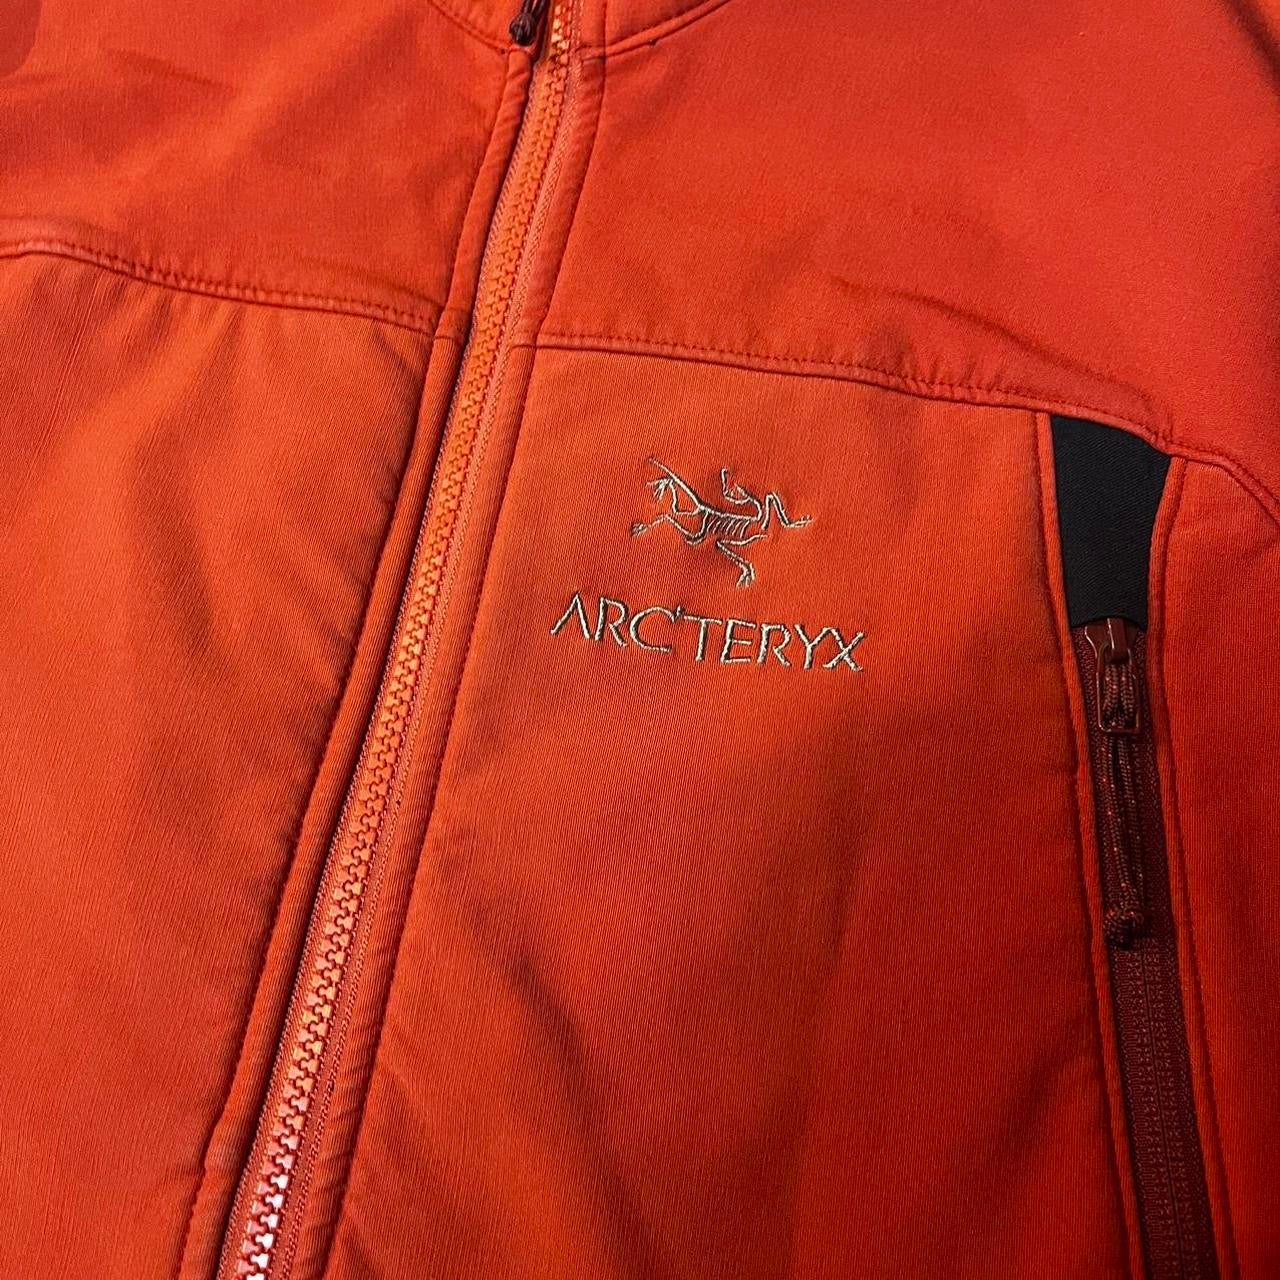 Arcteryx jacket (M)